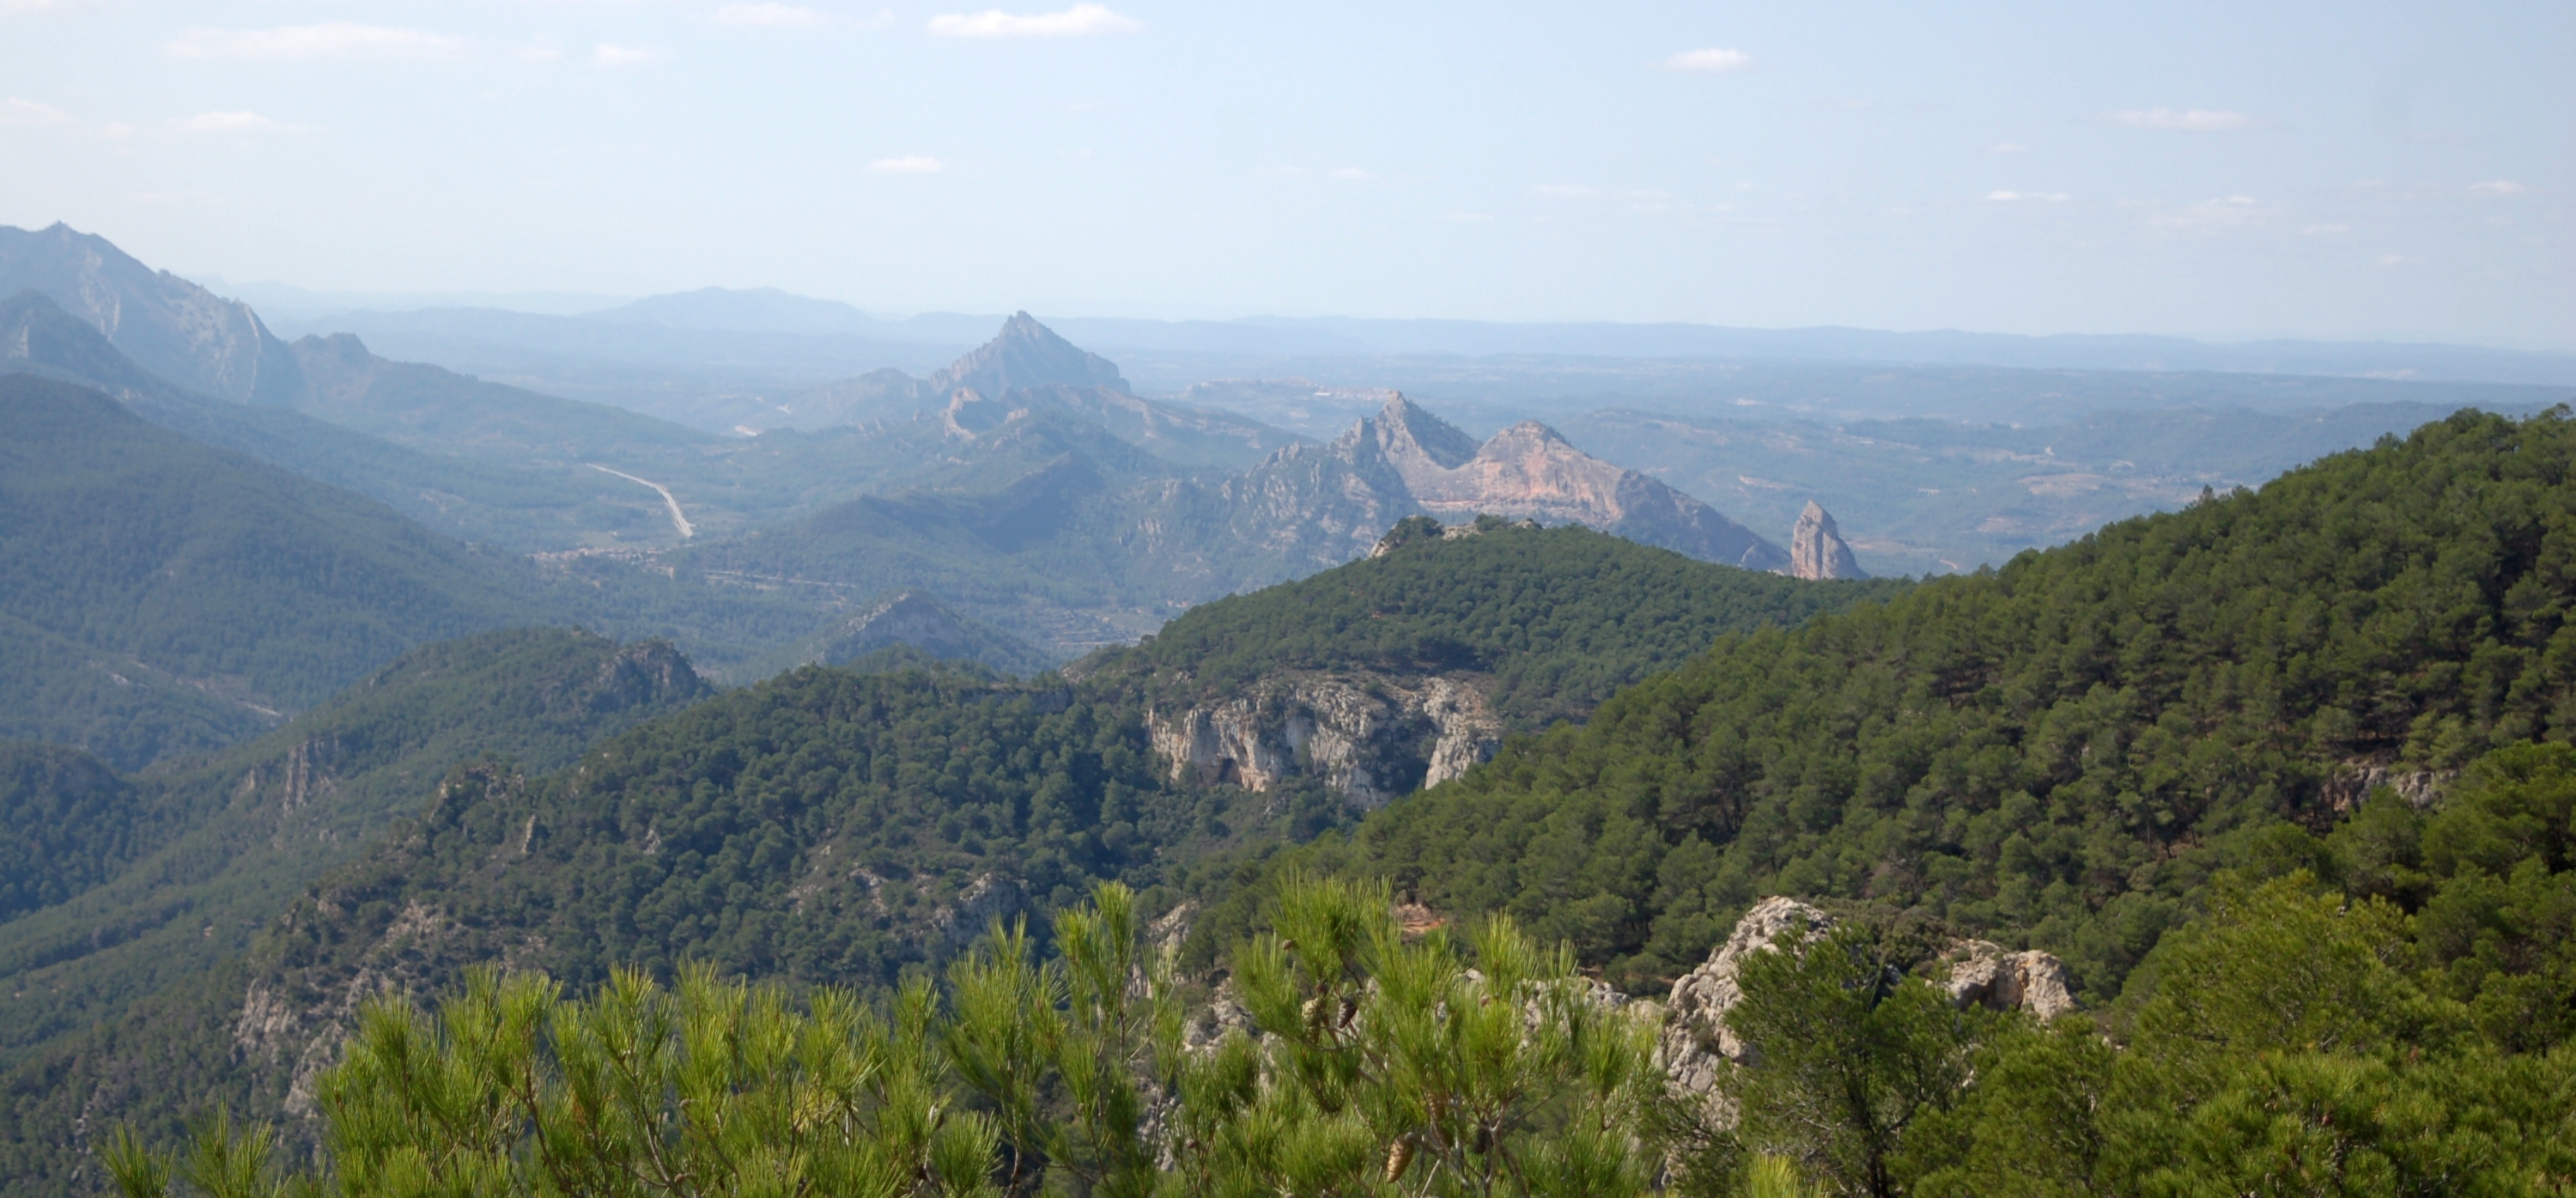 Catalan landscape